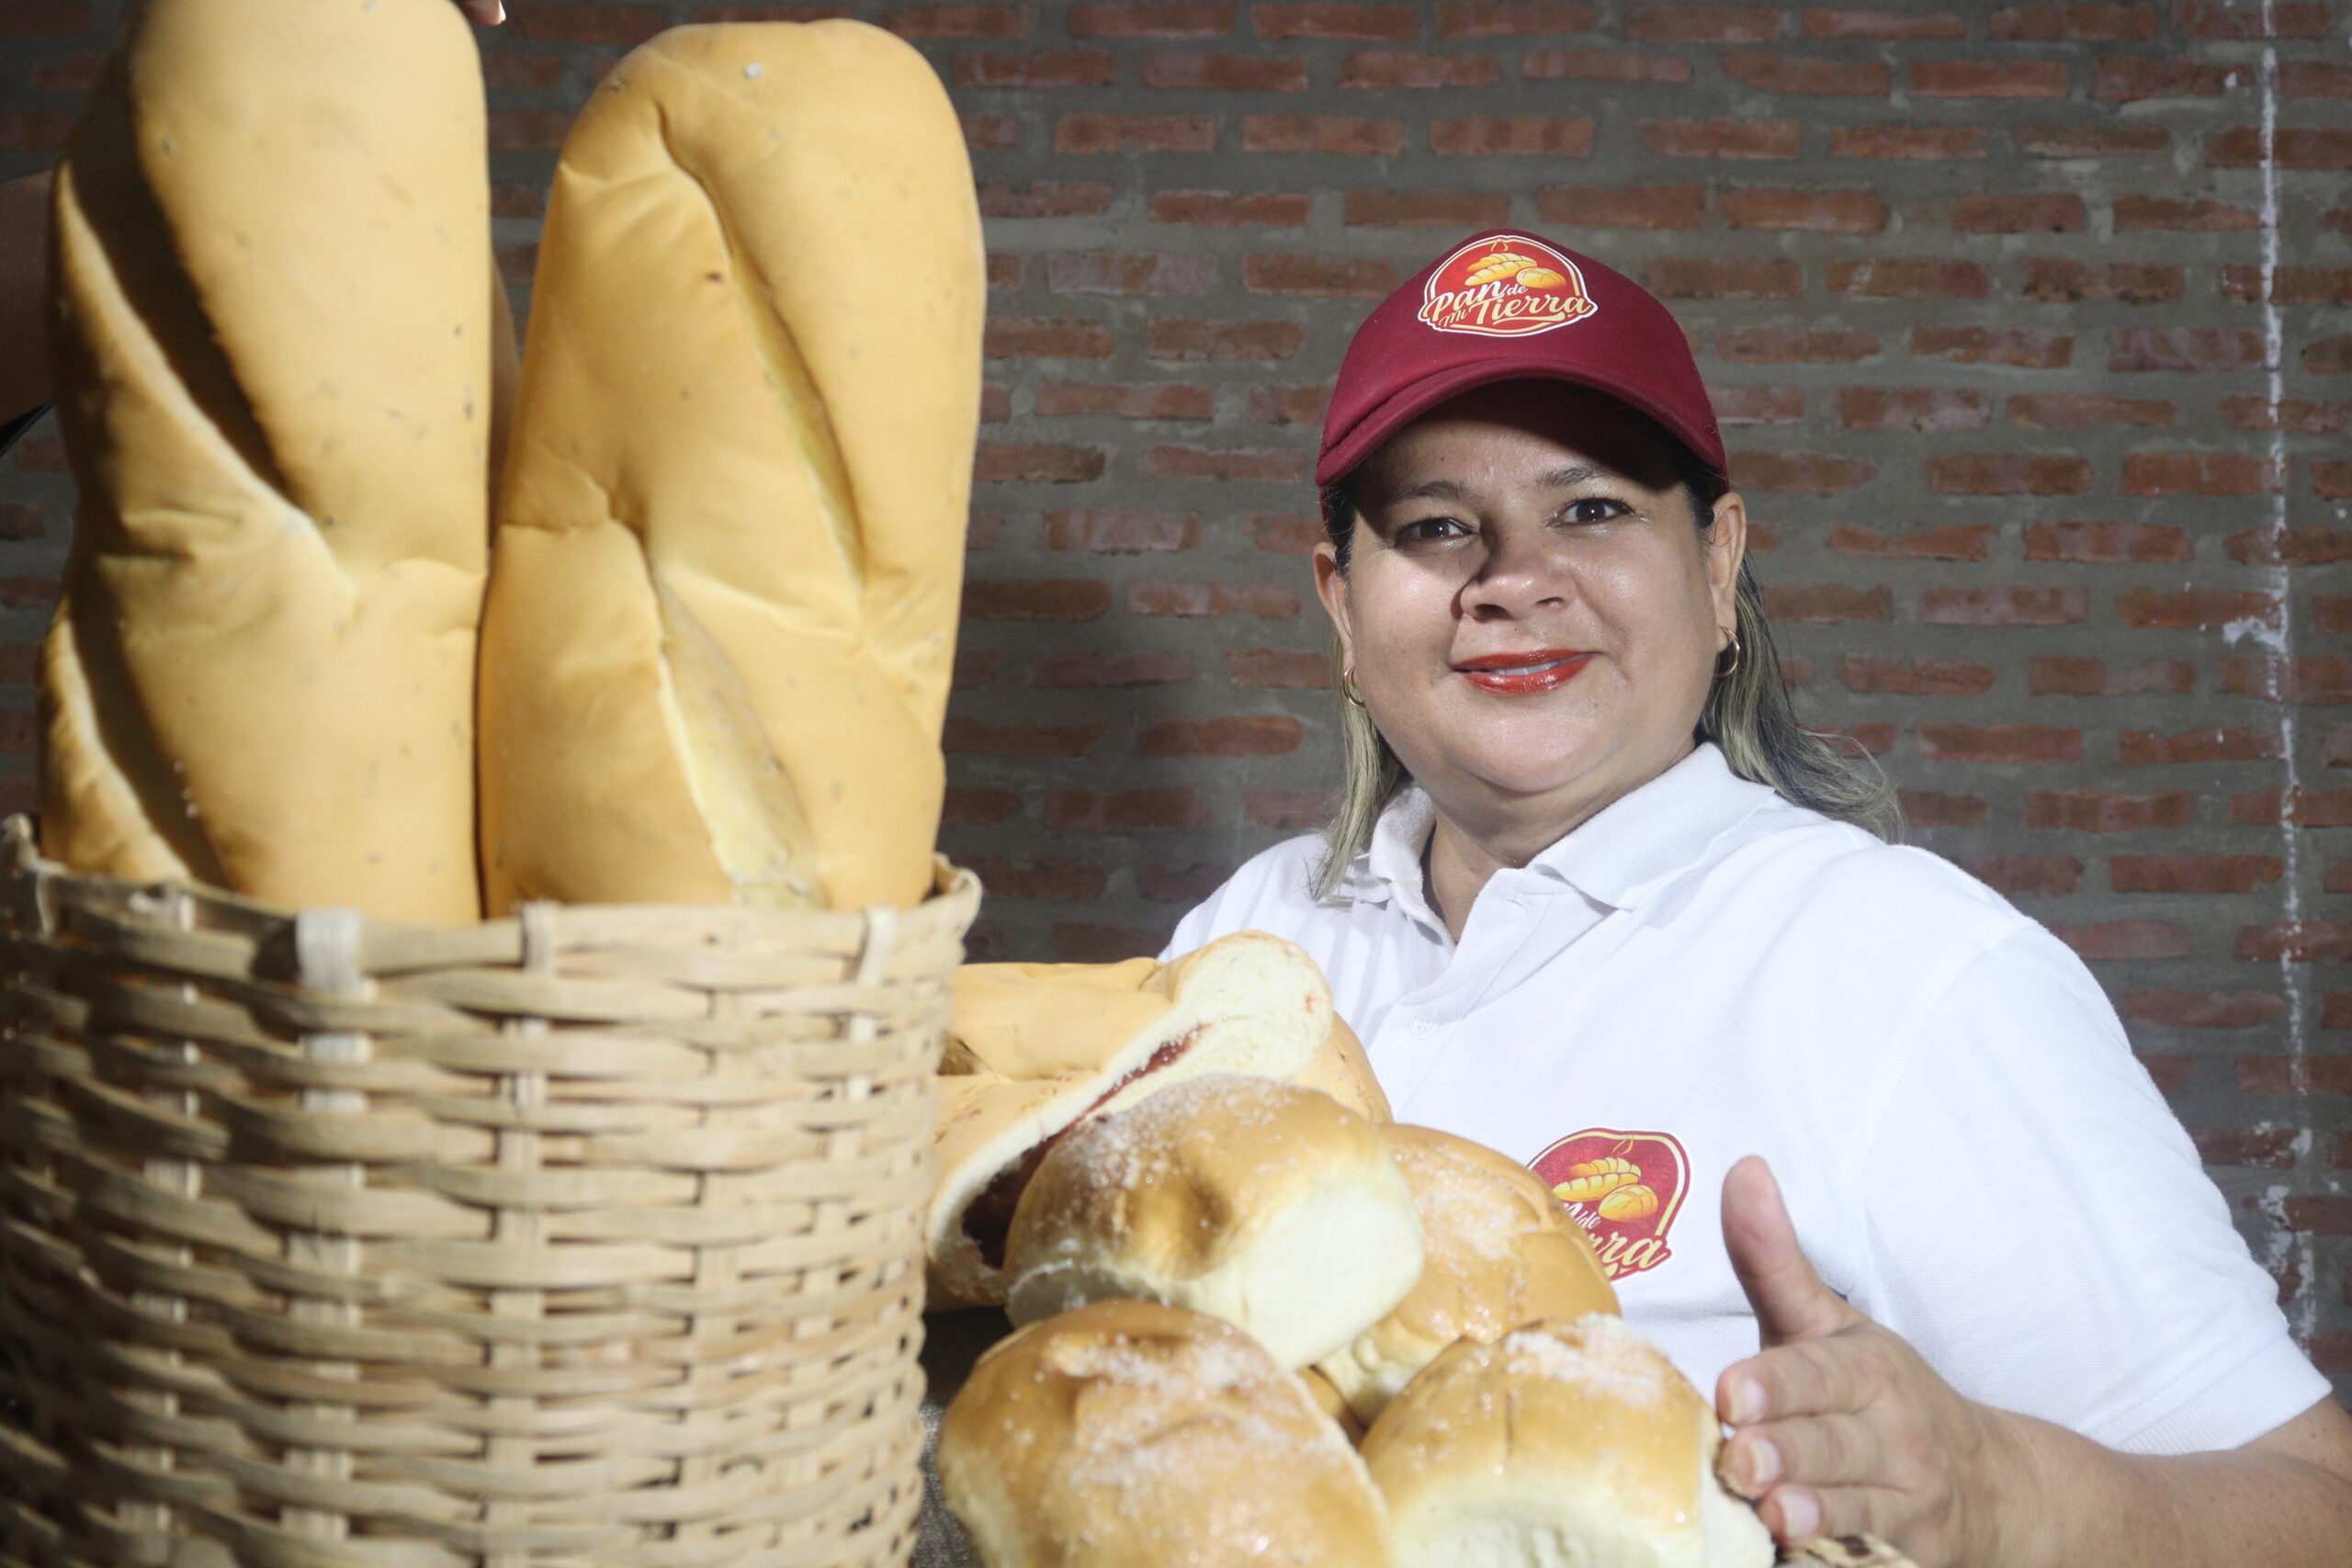 Marlyn Blanco, venezolana nos muestra su pasión por el emprendimiento, a través de su panadería @pan_demitierra